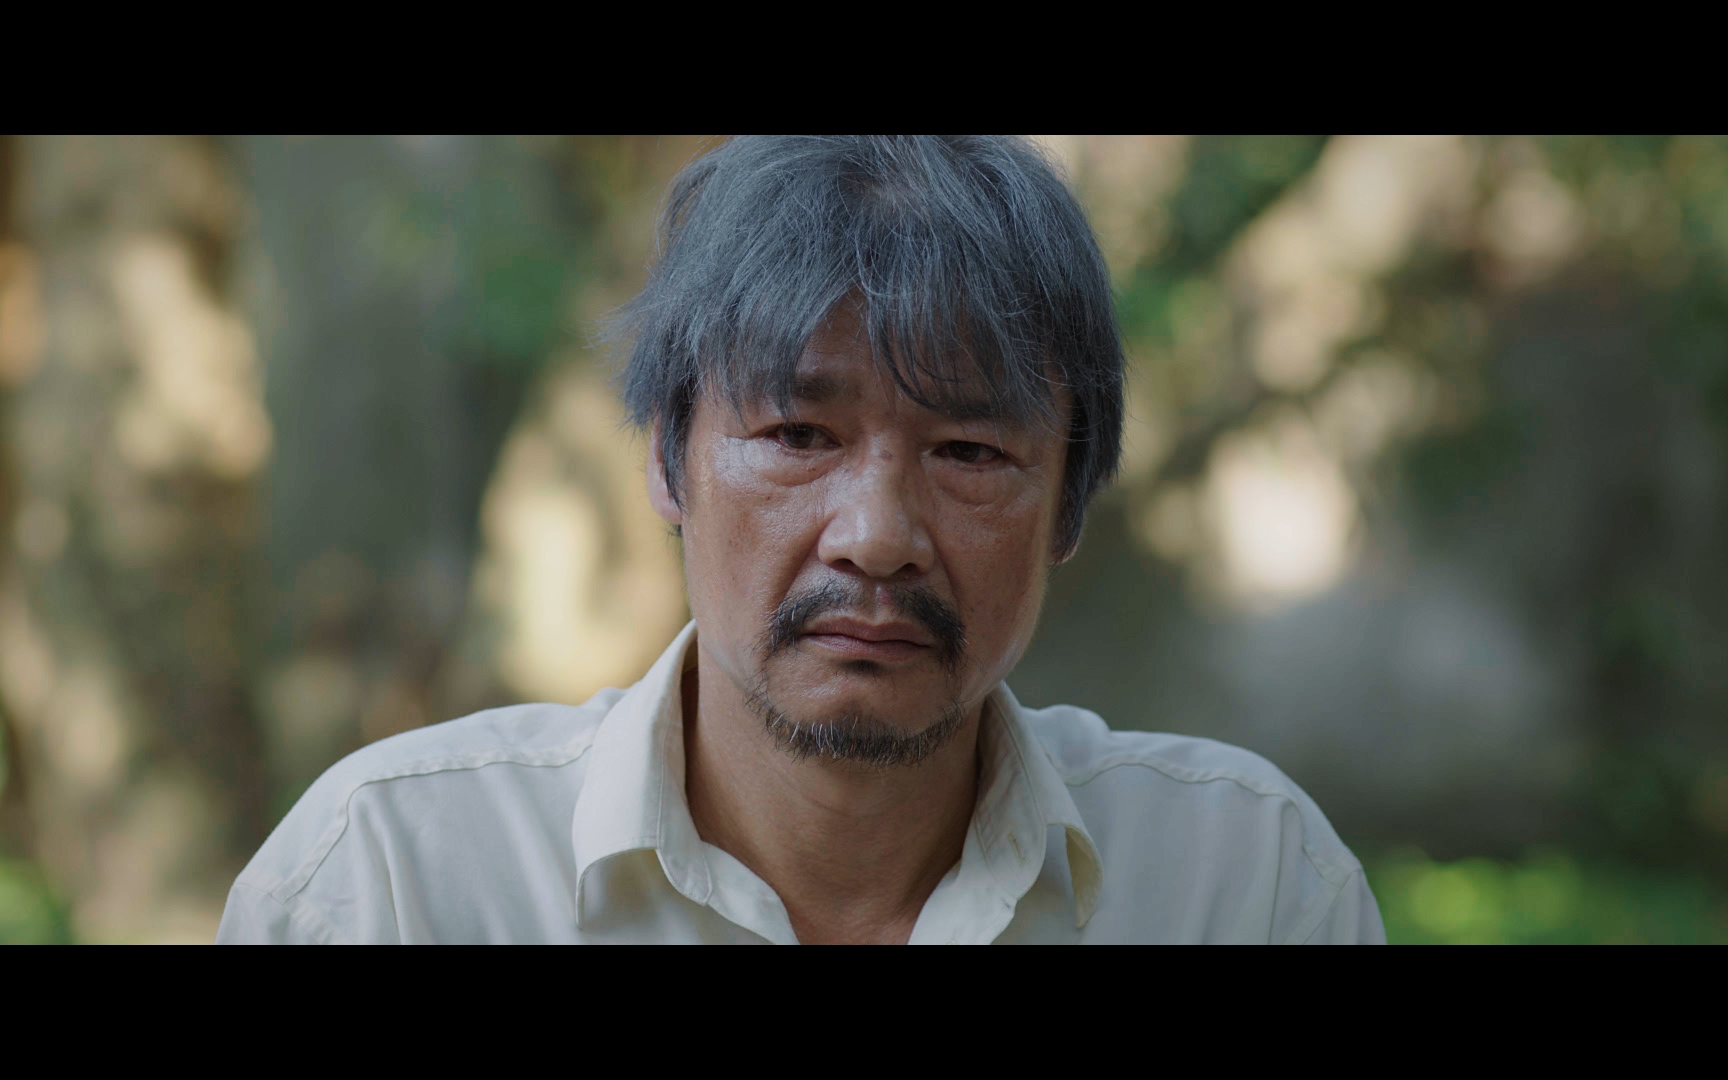 Diễn viên Võ Hoài Nam trở lại với phim mới "Món quà của cha", thay thế phim "Cuộc đời vẫn đẹp sao"